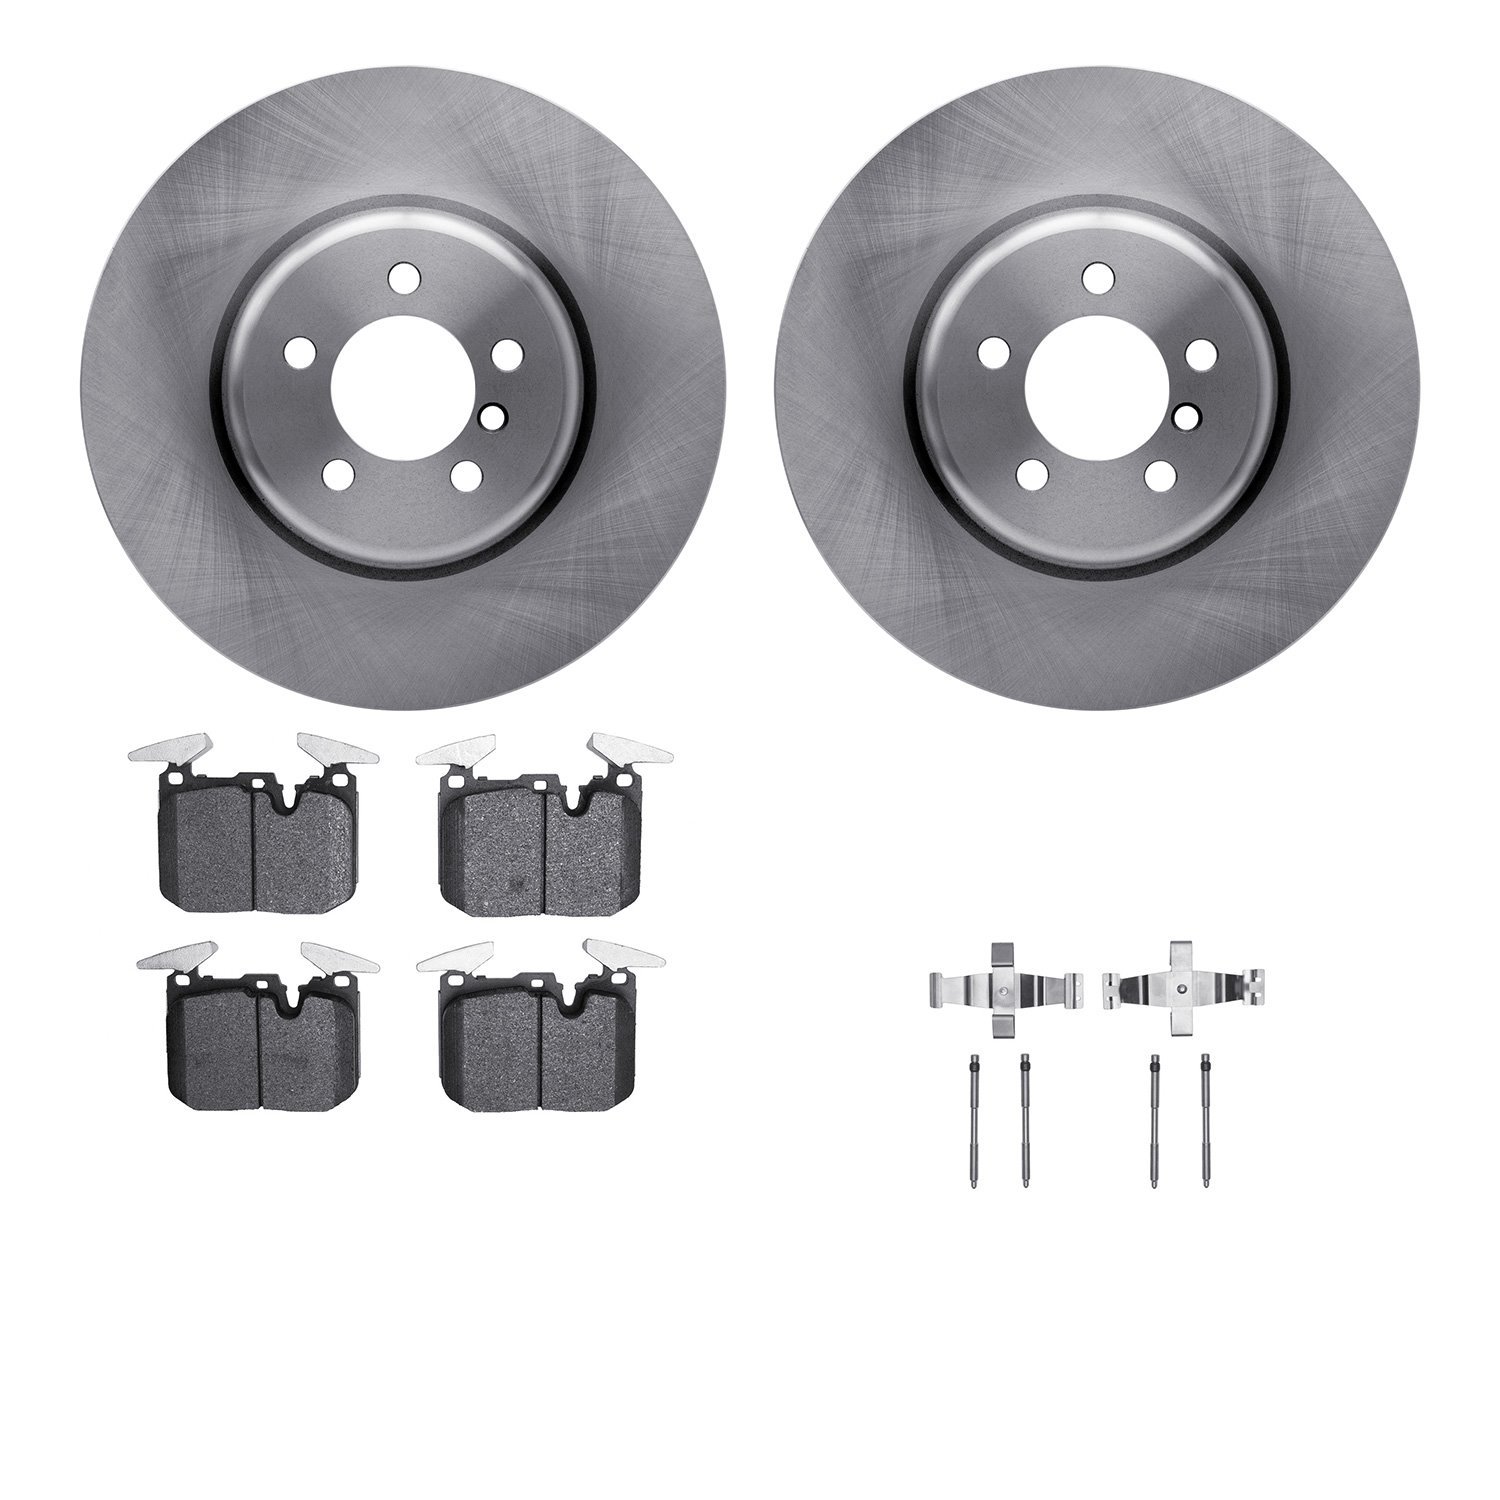 6612-31396 Brake Rotors w/5000 Euro Ceramic Brake Pads Kit with Hardware, 2013-2020 BMW, Position: Front